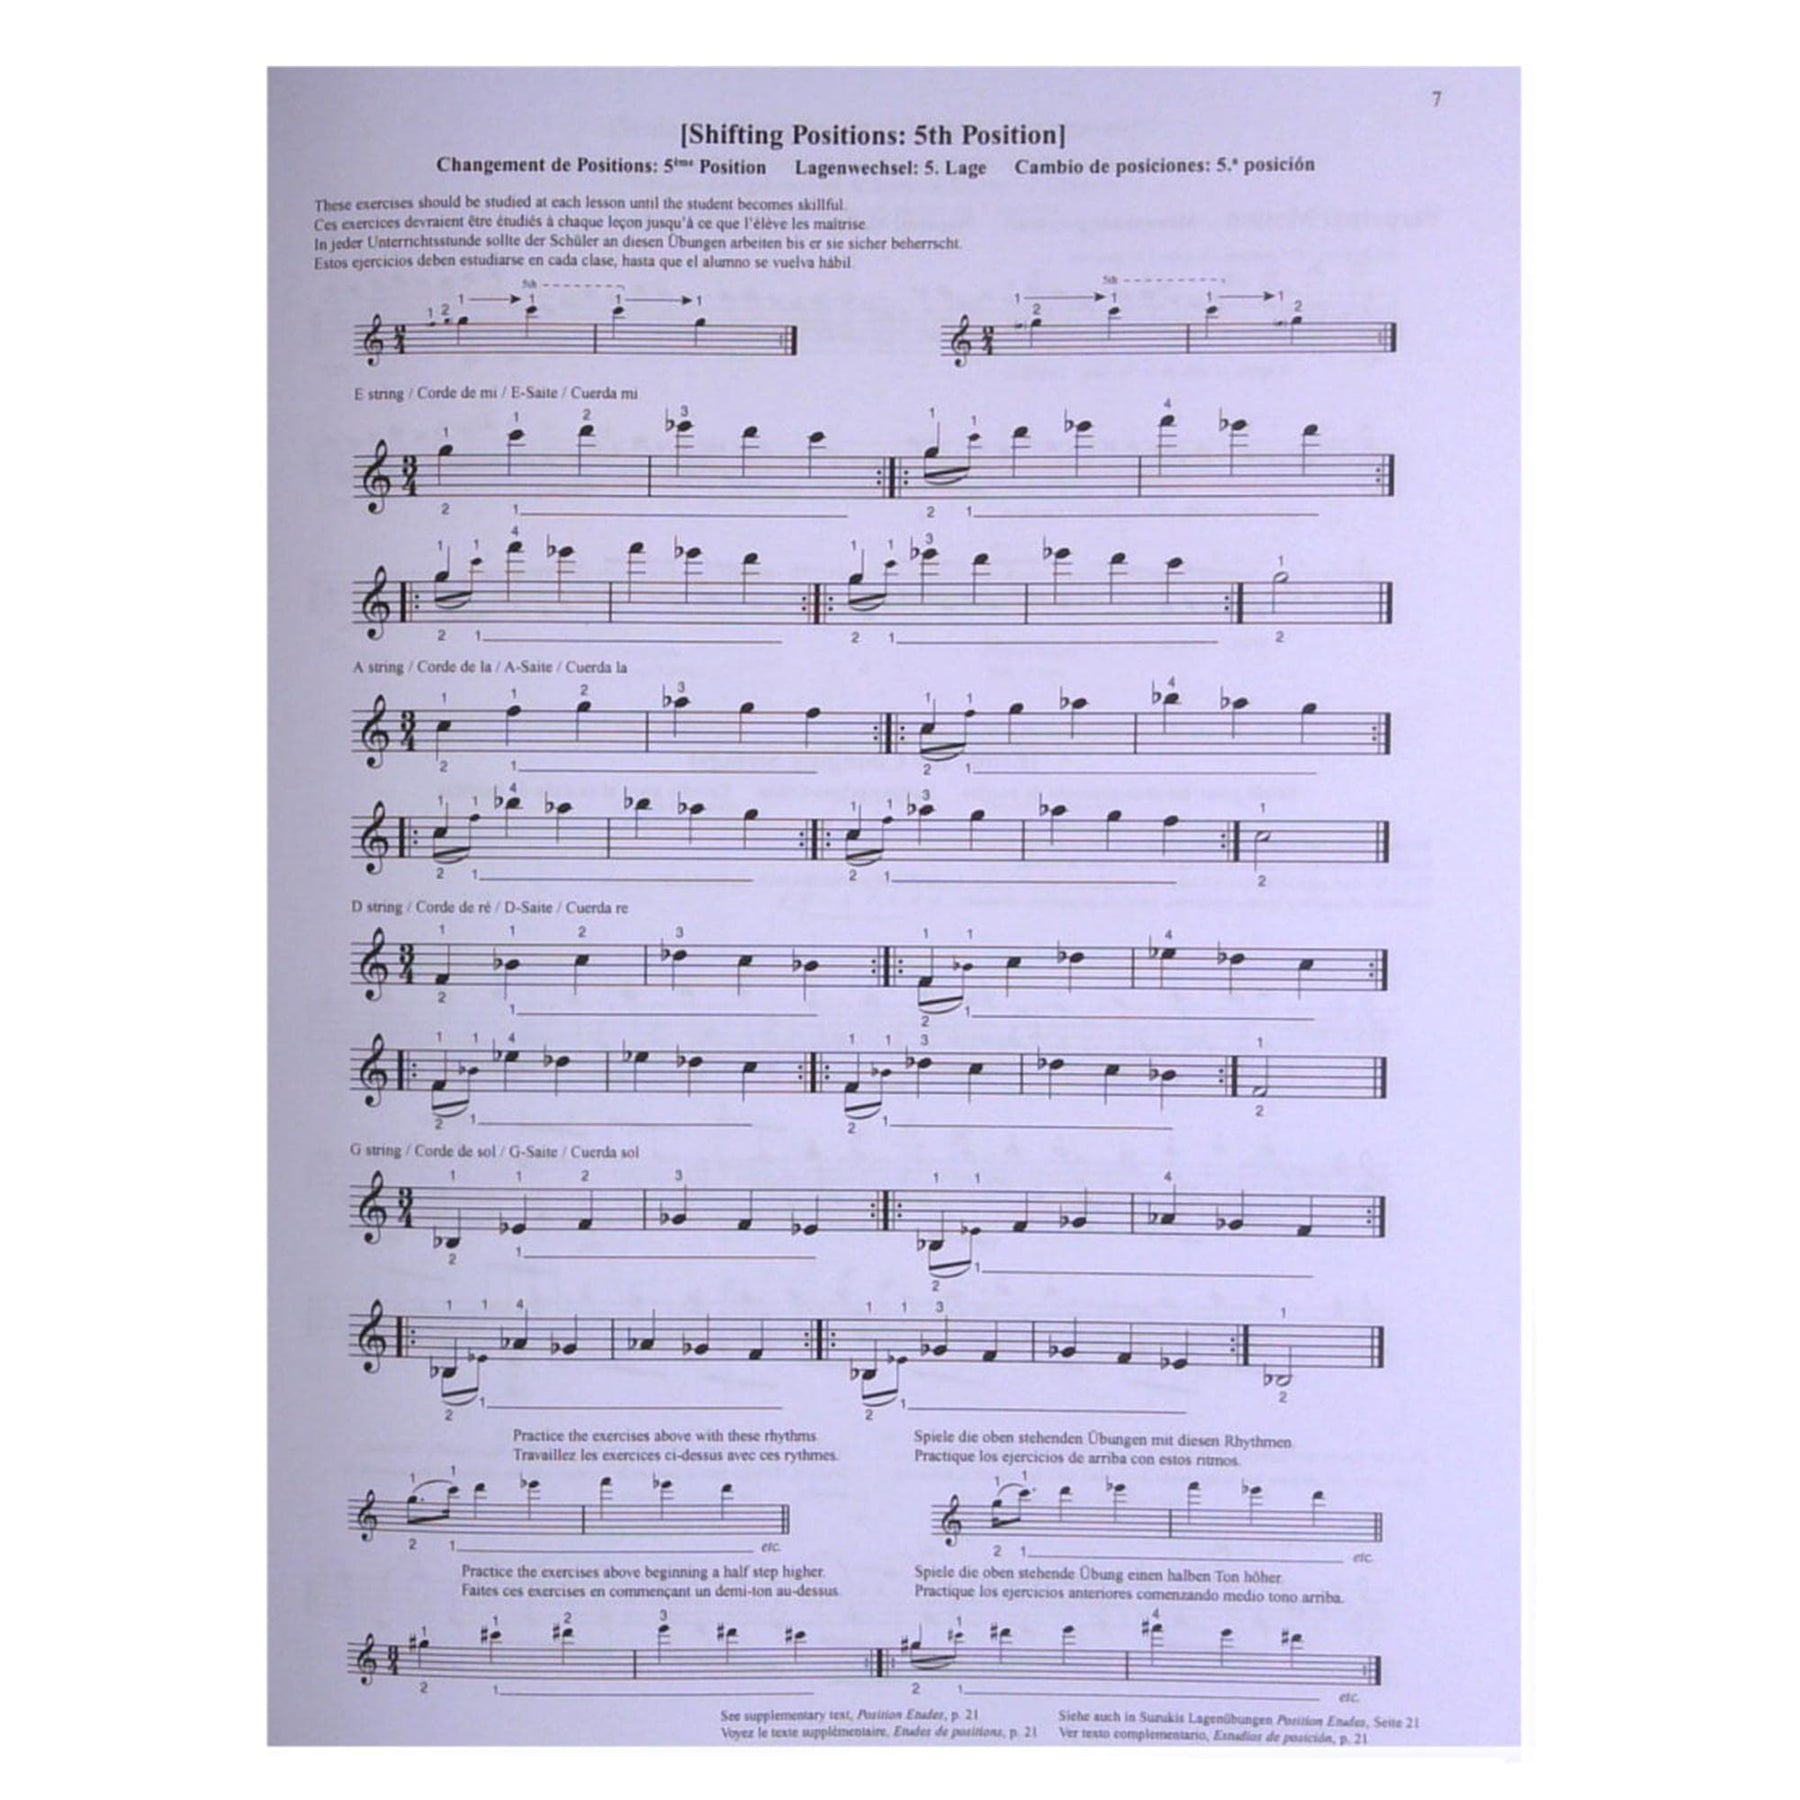 Suzuki Violin School, Volume 5